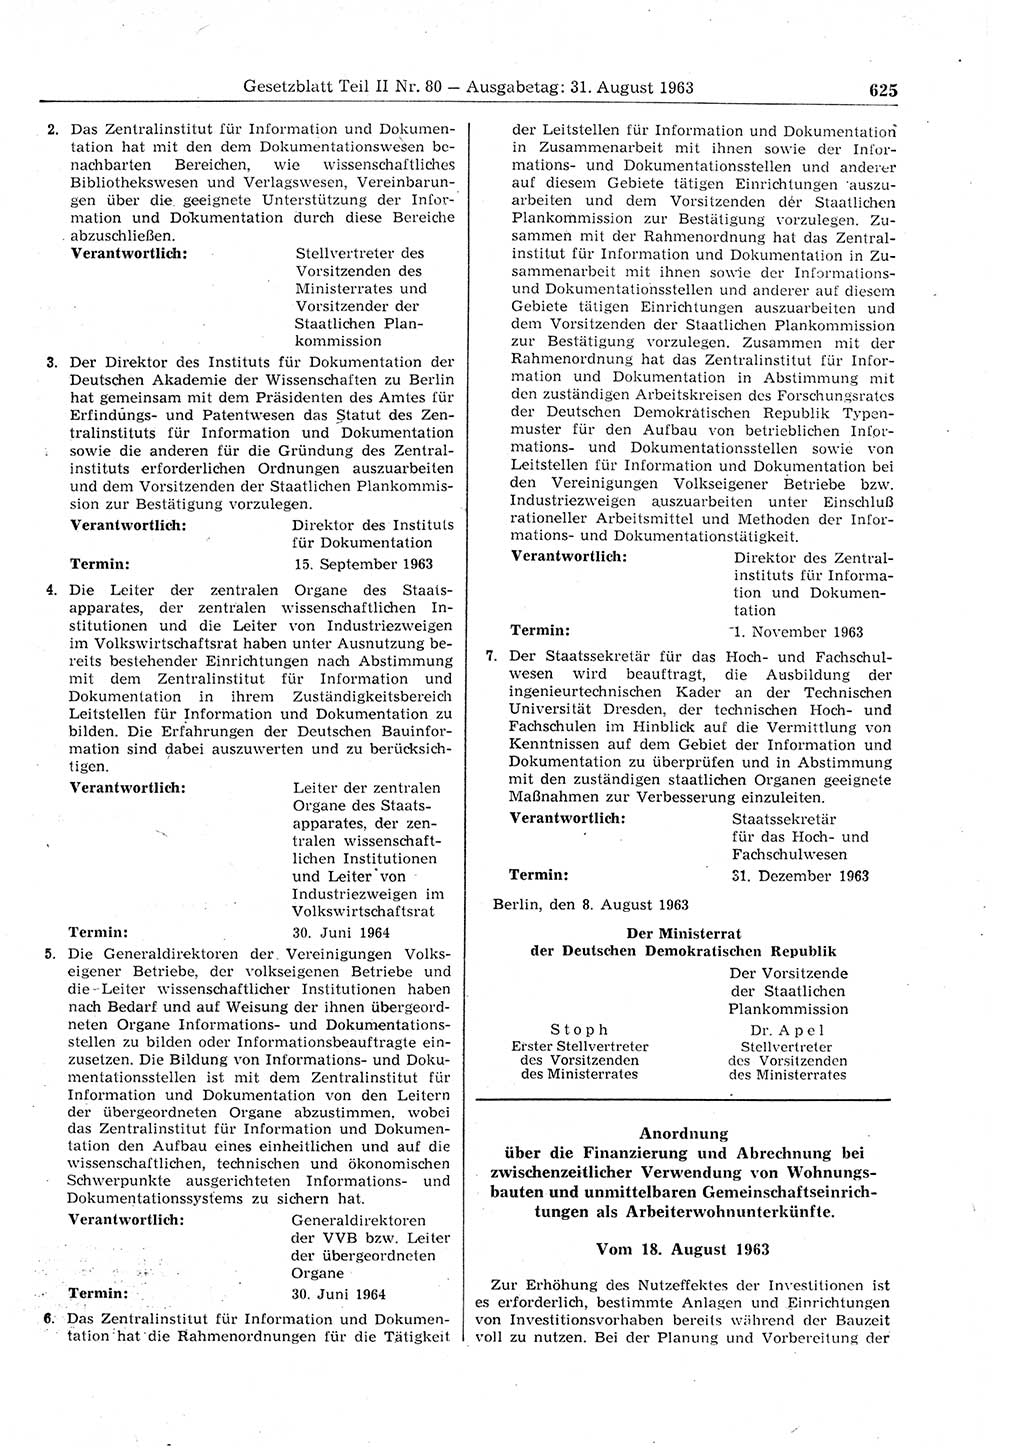 Gesetzblatt (GBl.) der Deutschen Demokratischen Republik (DDR) Teil ⅠⅠ 1963, Seite 625 (GBl. DDR ⅠⅠ 1963, S. 625)